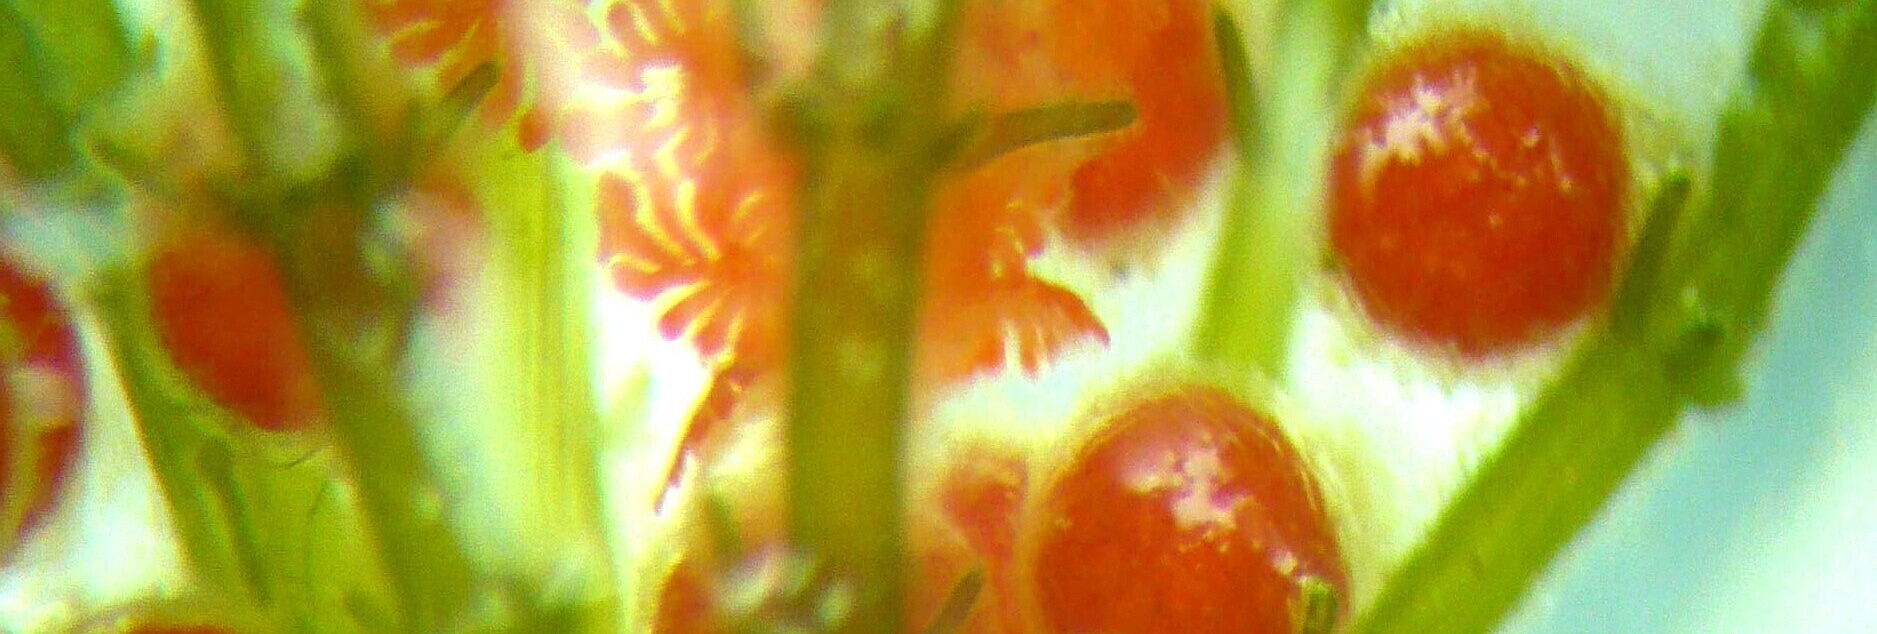 Einzelne Wasserpflanze Armleuchter mit roten Blüten